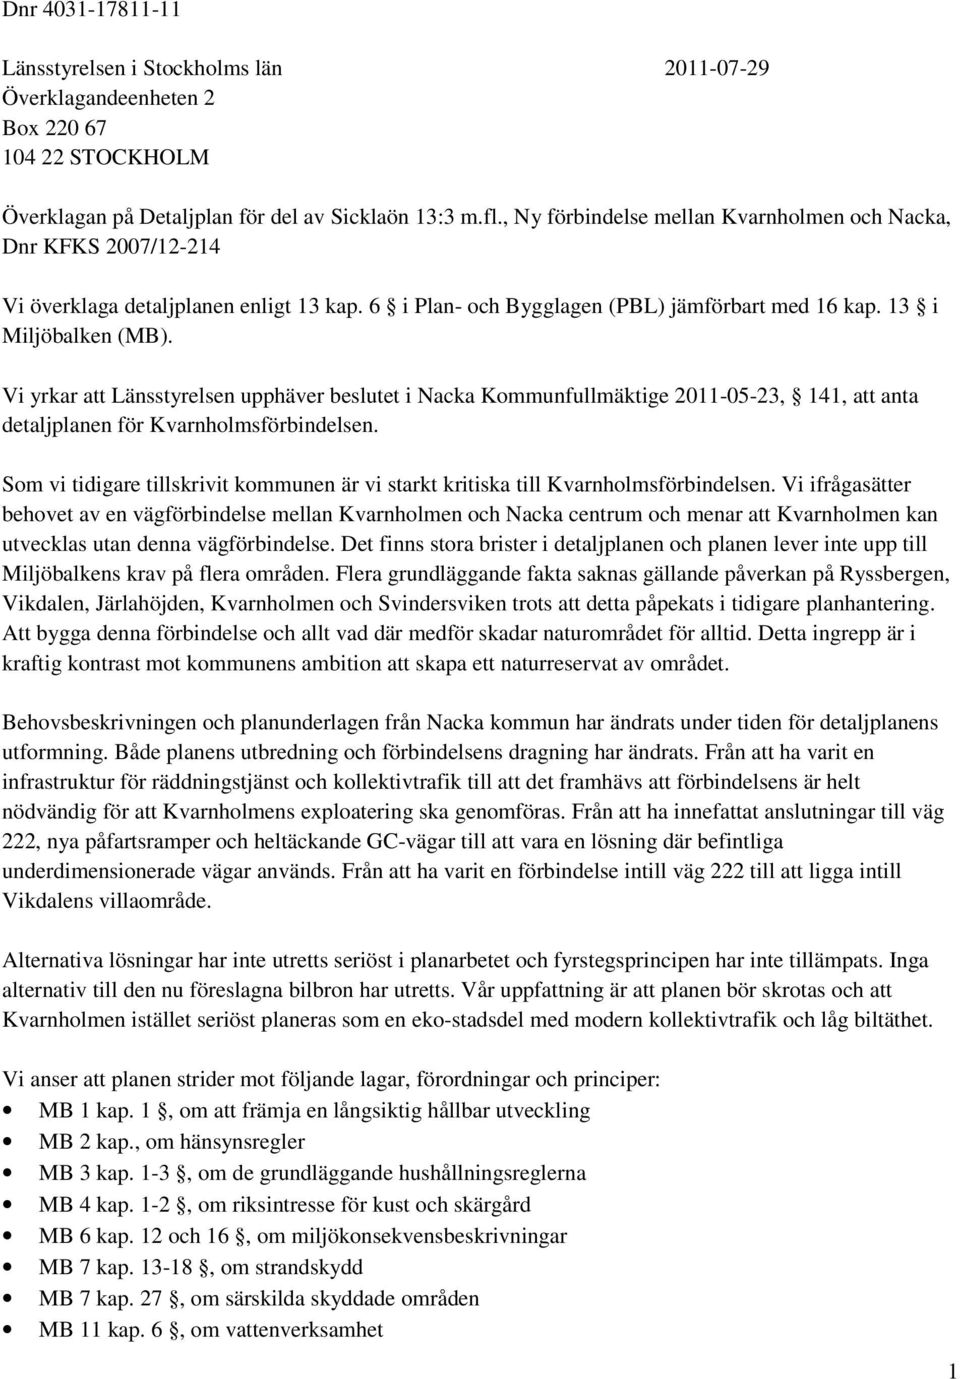 Vi yrkar att Länsstyrelsen upphäver beslutet i Nacka Kommunfullmäktige 2011-05-23, 141, att anta detaljplanen för Kvarnholmsförbindelsen.